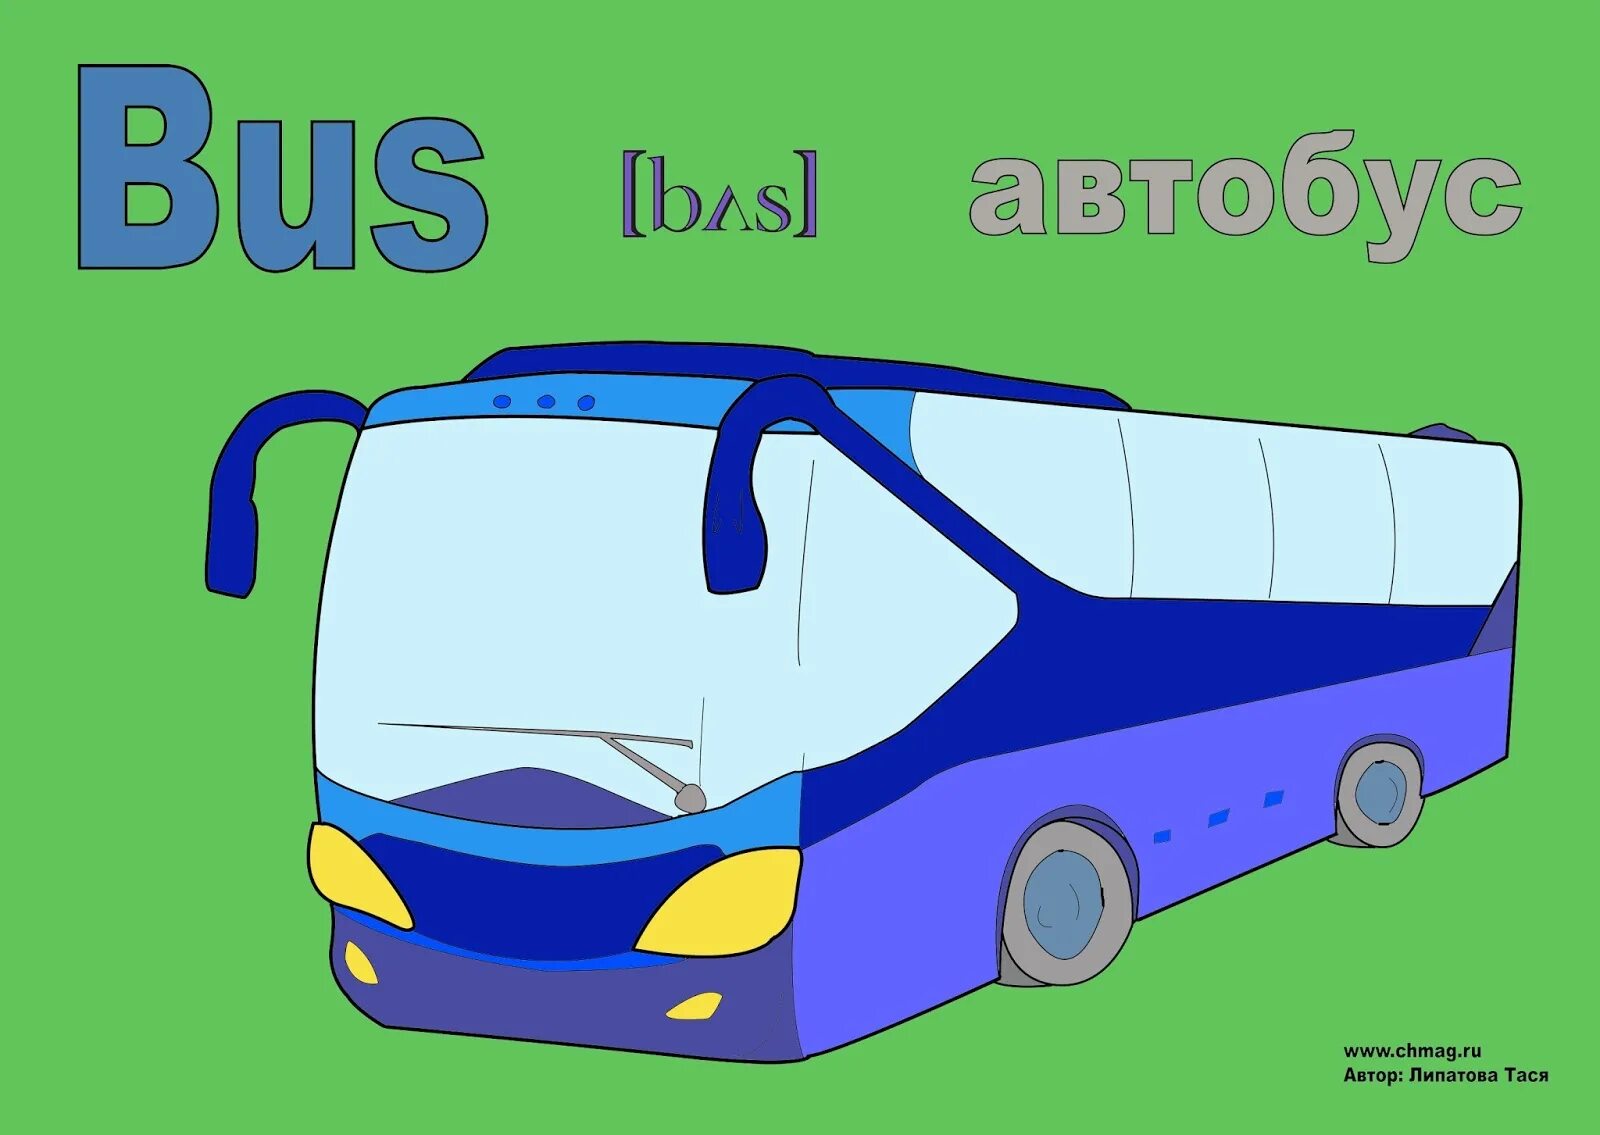 Машина произносится. Автобус картинка. Автобус на английском языке. Английское слово автобус. Автобус иллюстрация.